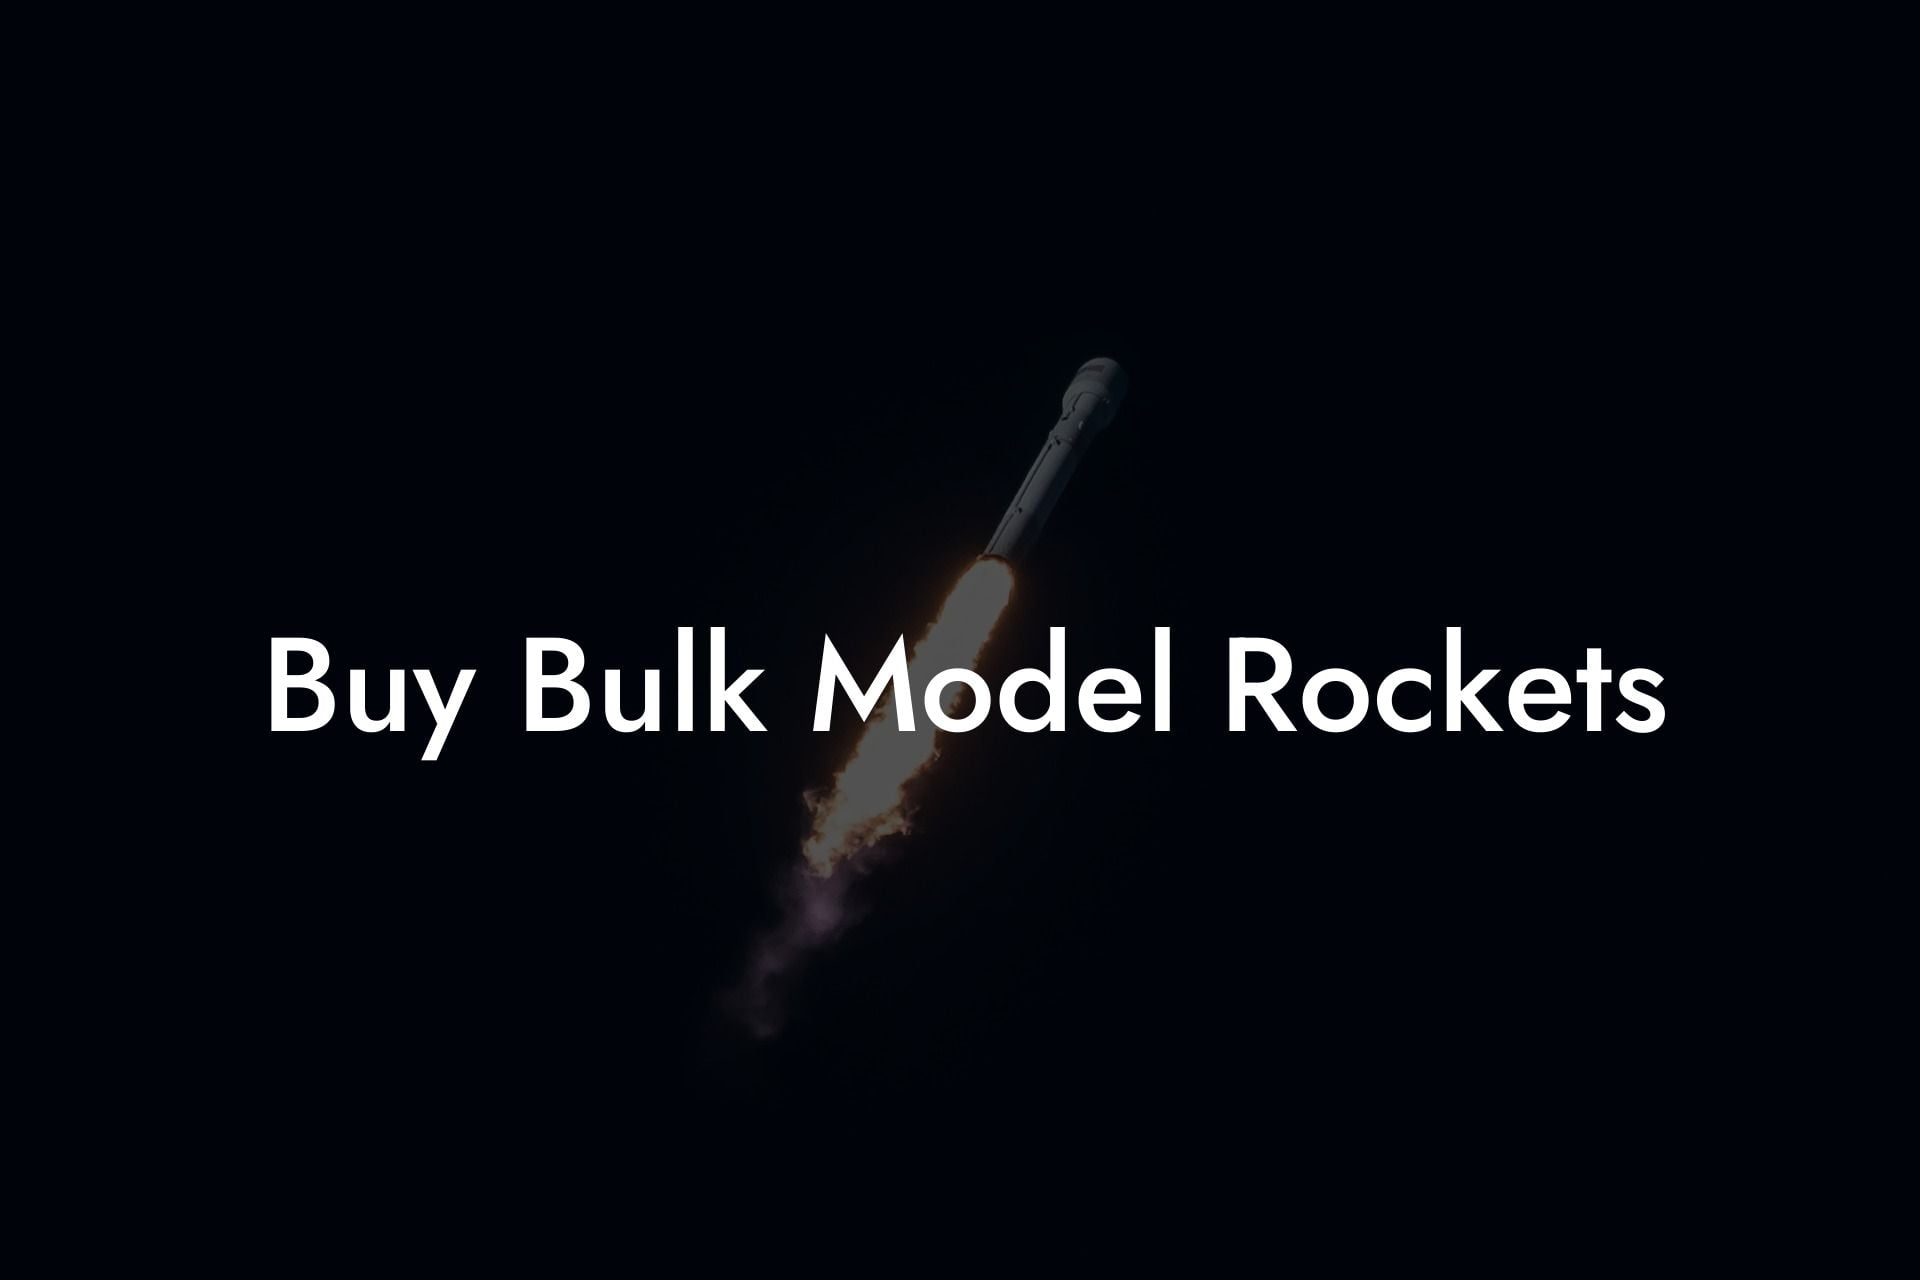 Buy Bulk Model Rockets